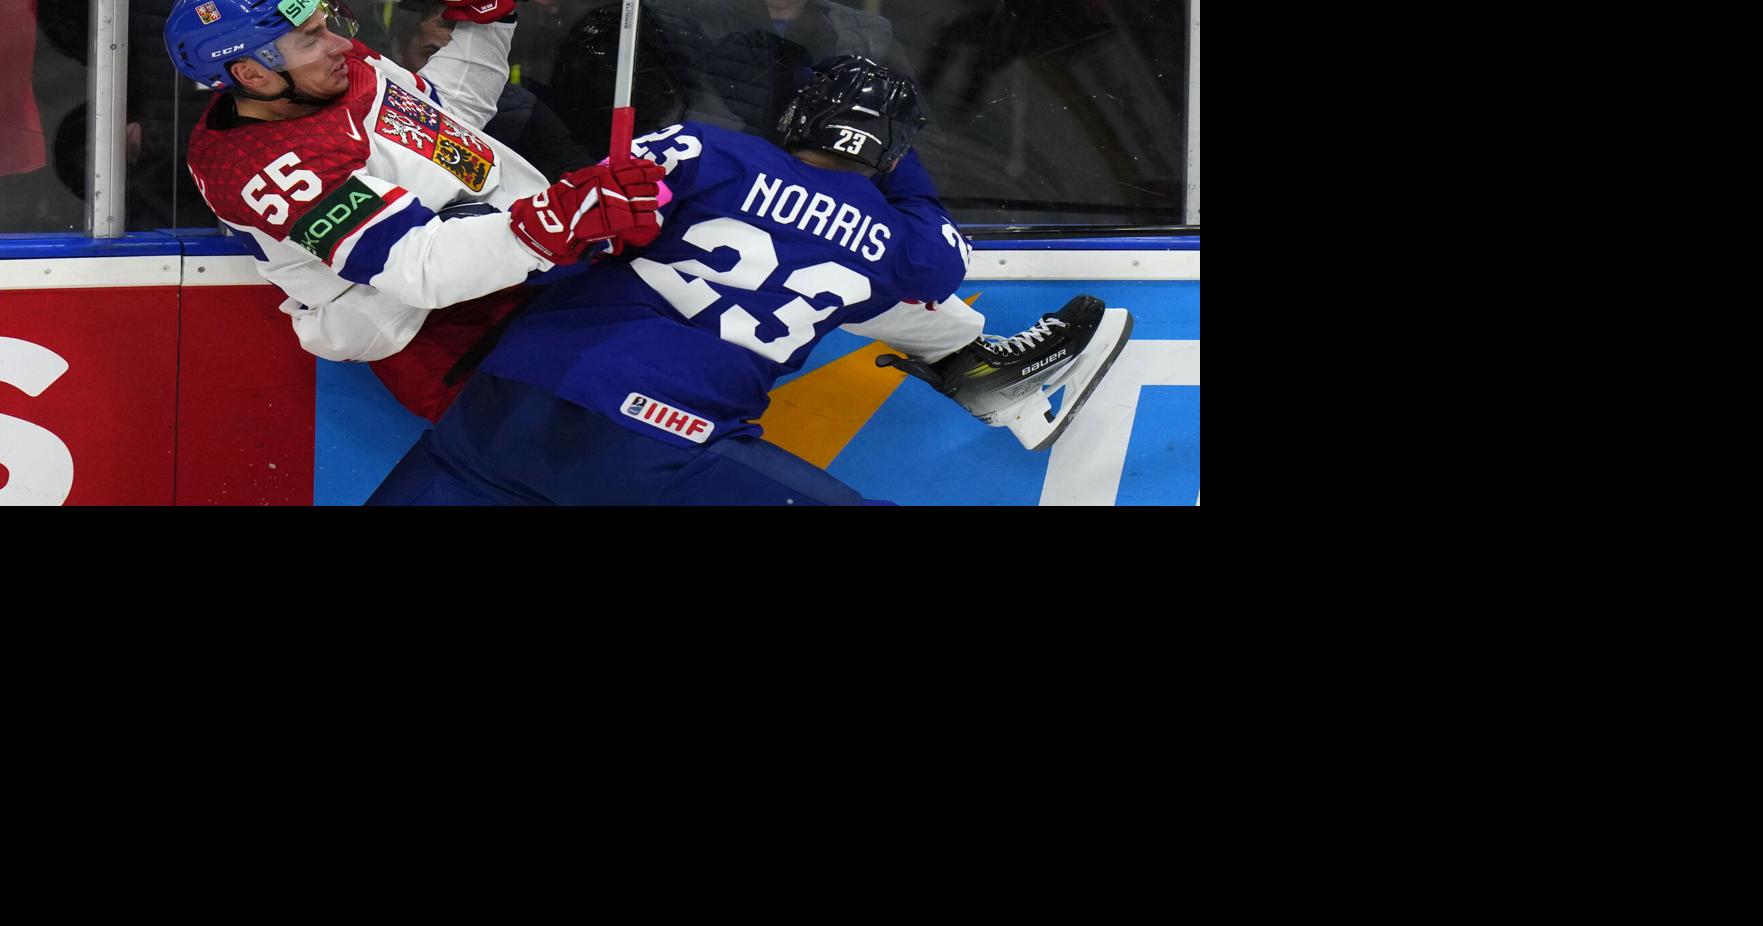 Česká republika Světy ledního hokeje |  Národní sport